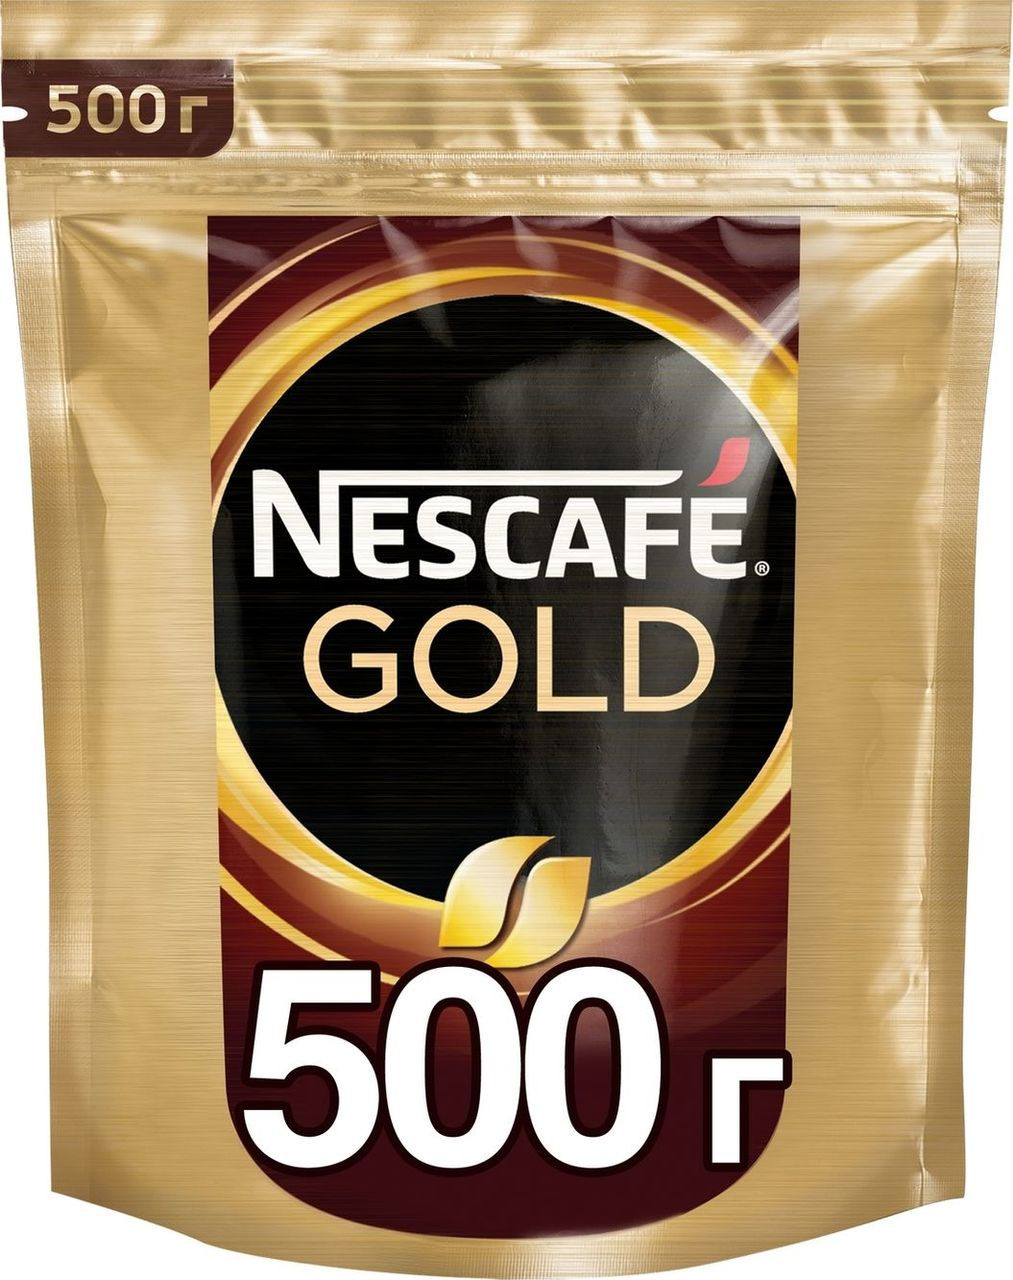 Купить кофе голд 500 гр. Кофе Нескафе Голд 500г м/у. Нескафе Голд в мягкой упаковке 500 грамм. Нескафе Голд 500 гр. м/у. Кофе Nescafe Gold пакет 500 гр.